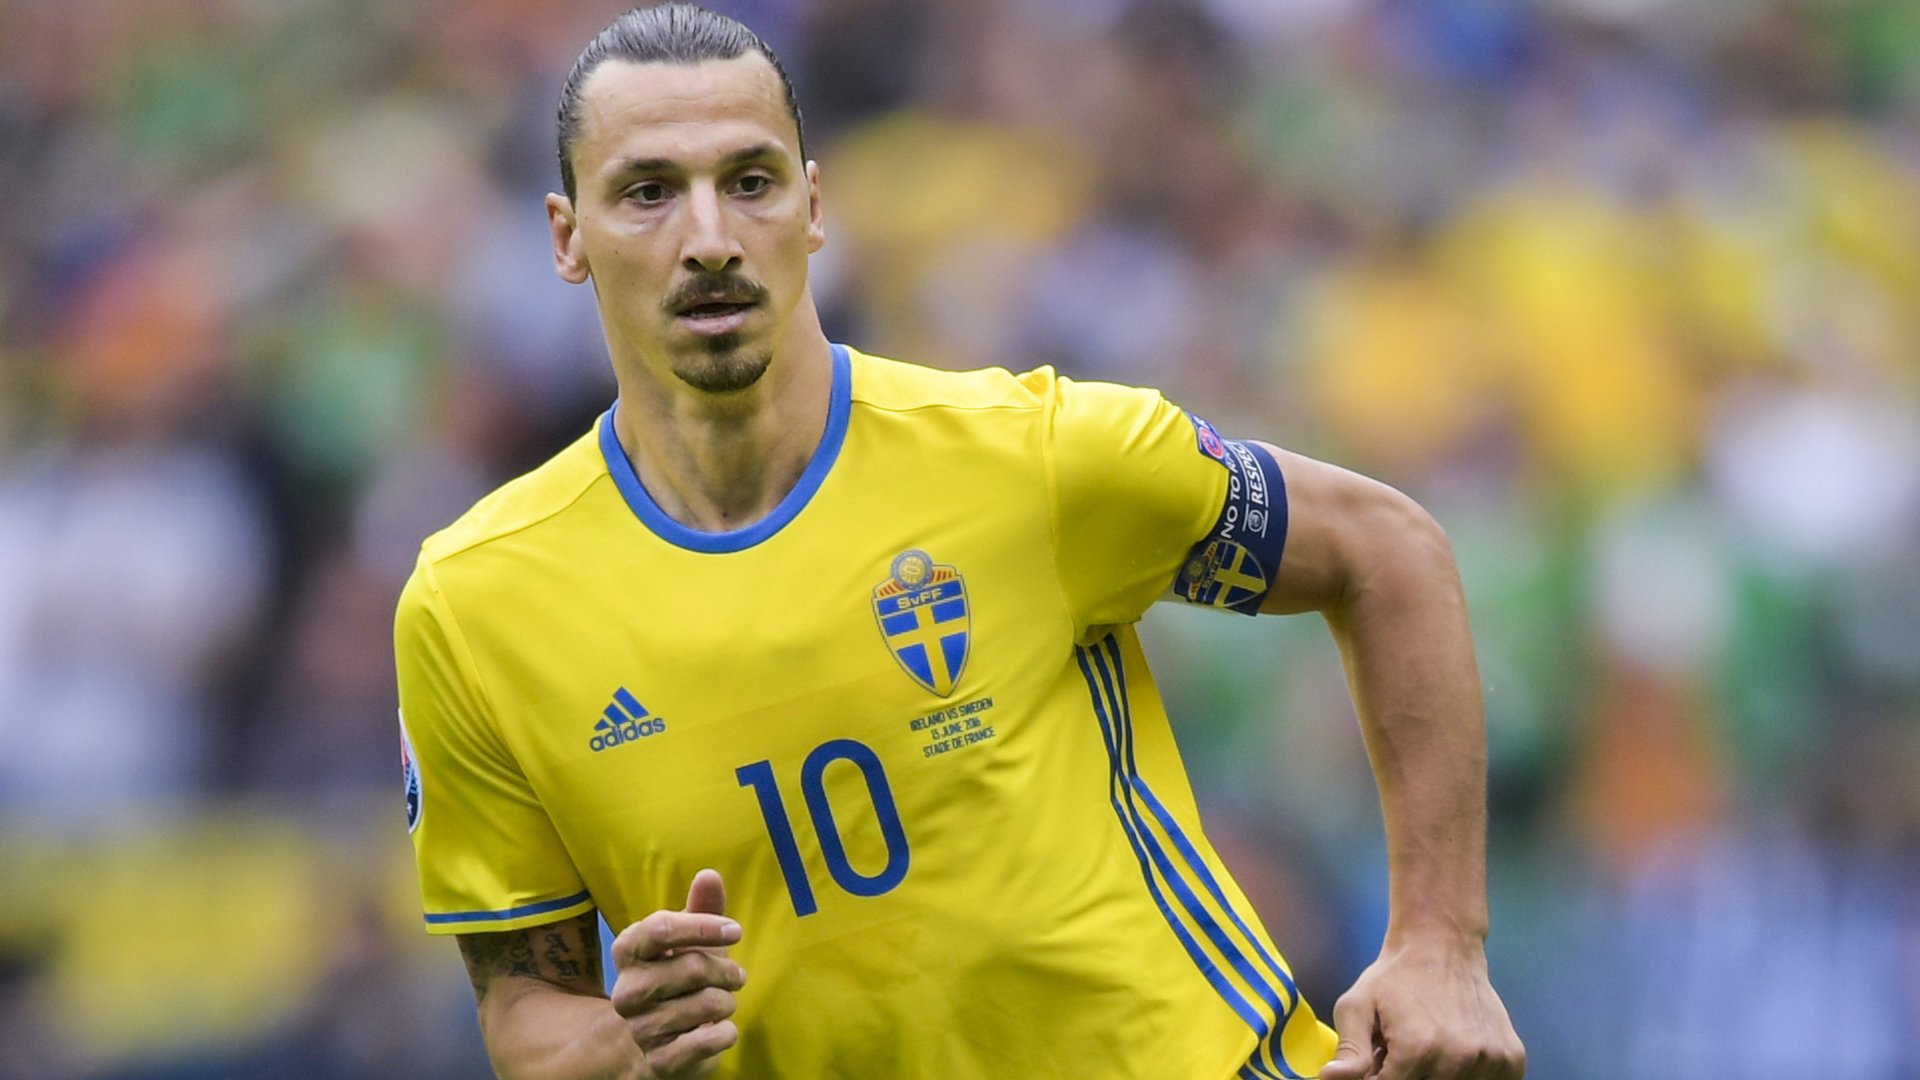 Zlatan Ibrahimovic recalled to Swedish national team despite retiring in 2016